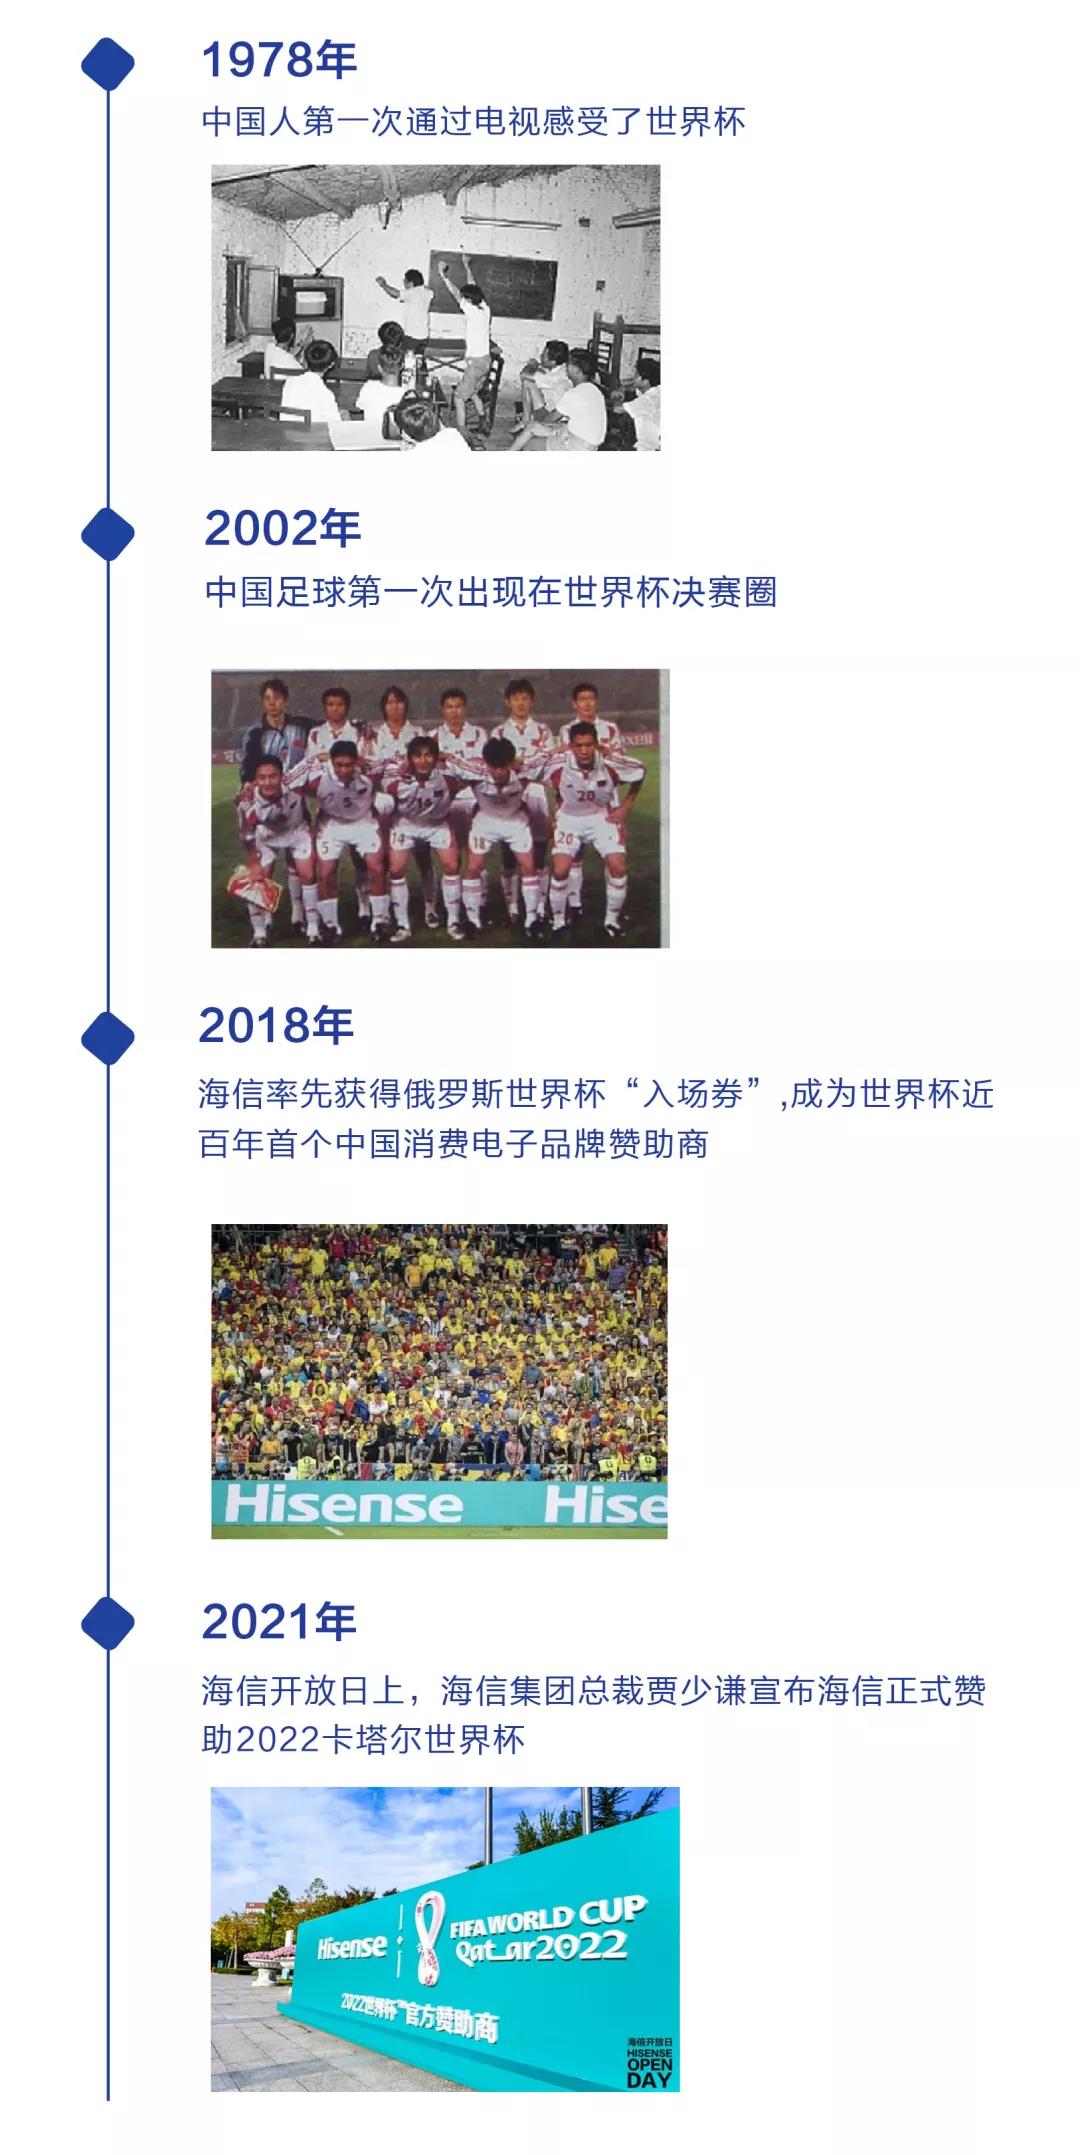 欧宝体育官方网站:
倒计时时钟上线由宇舶表赞助的2022世界杯进入倒计时(图)